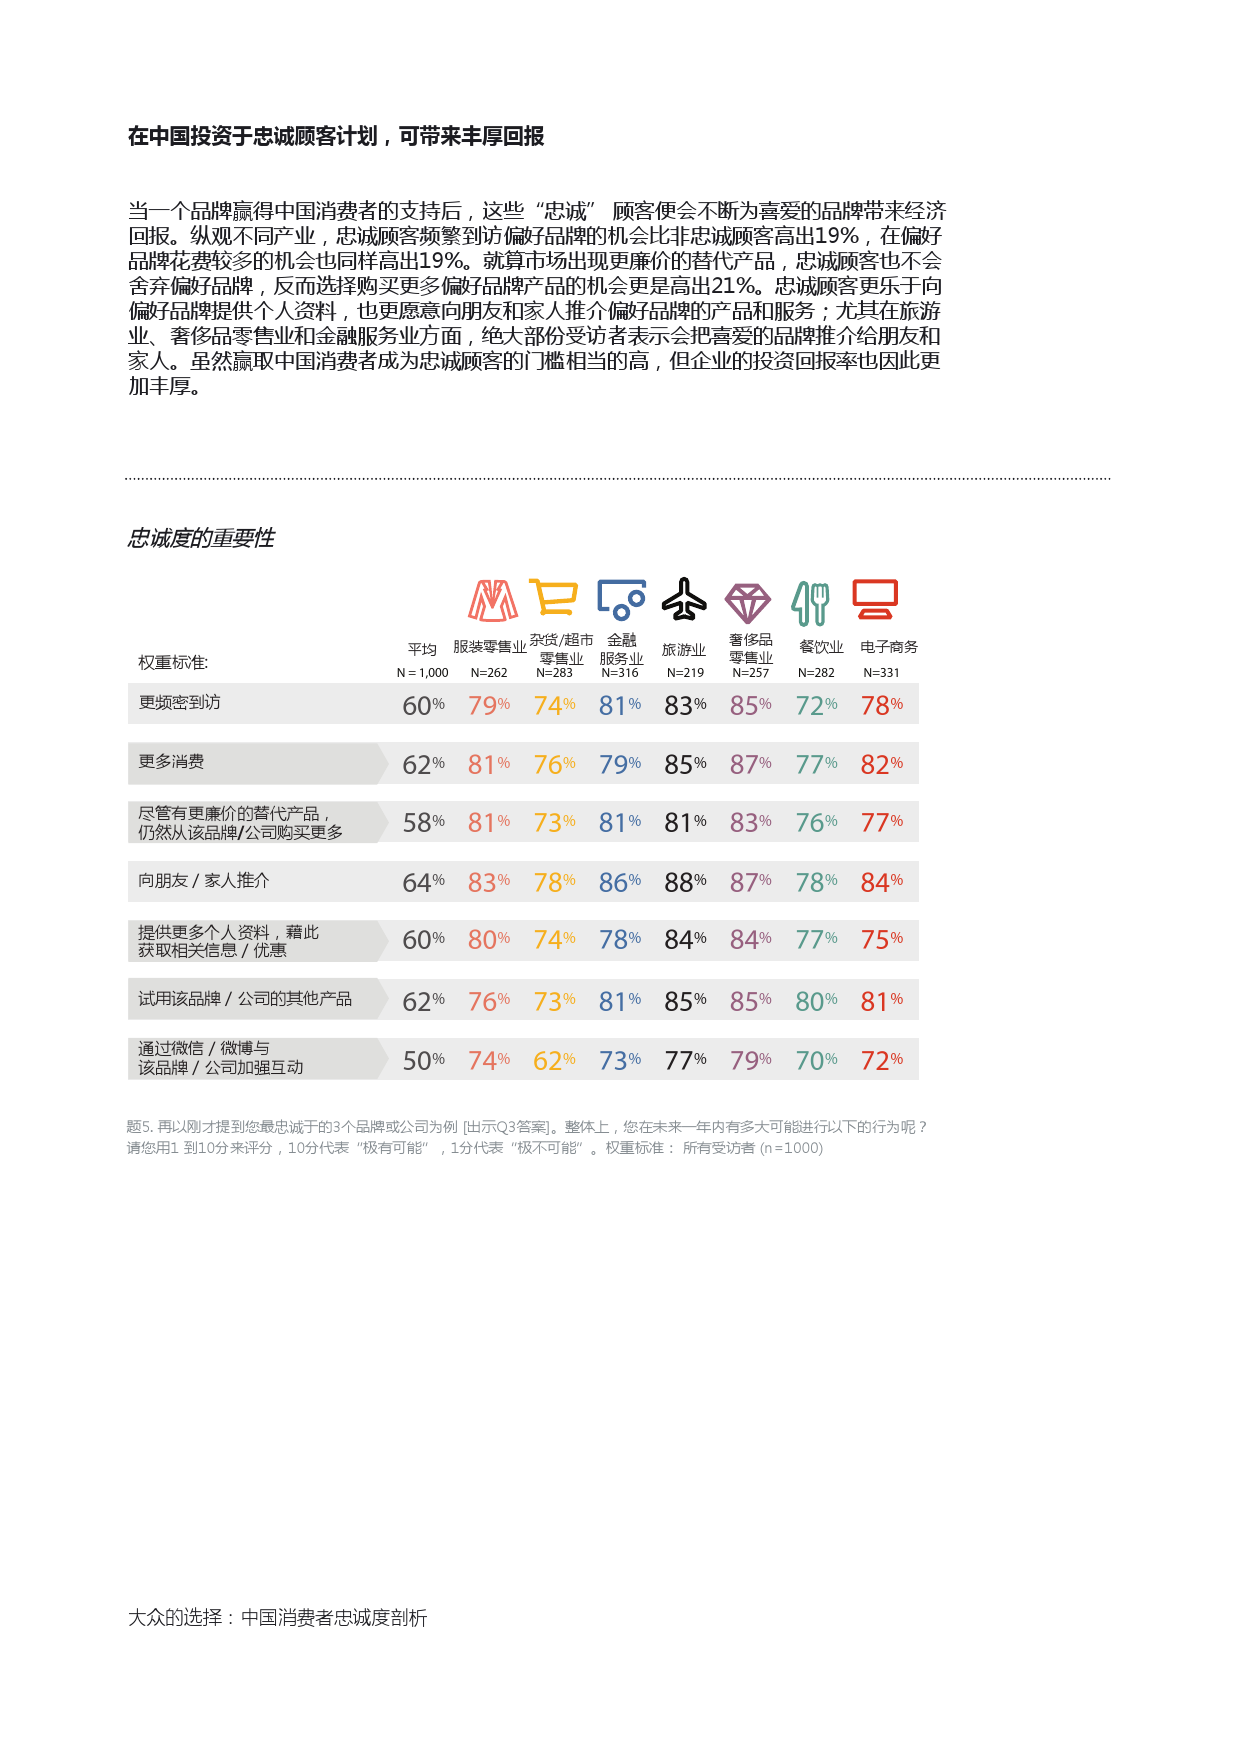 Epsilon_China_Loyalty_Study_report_CN_000015